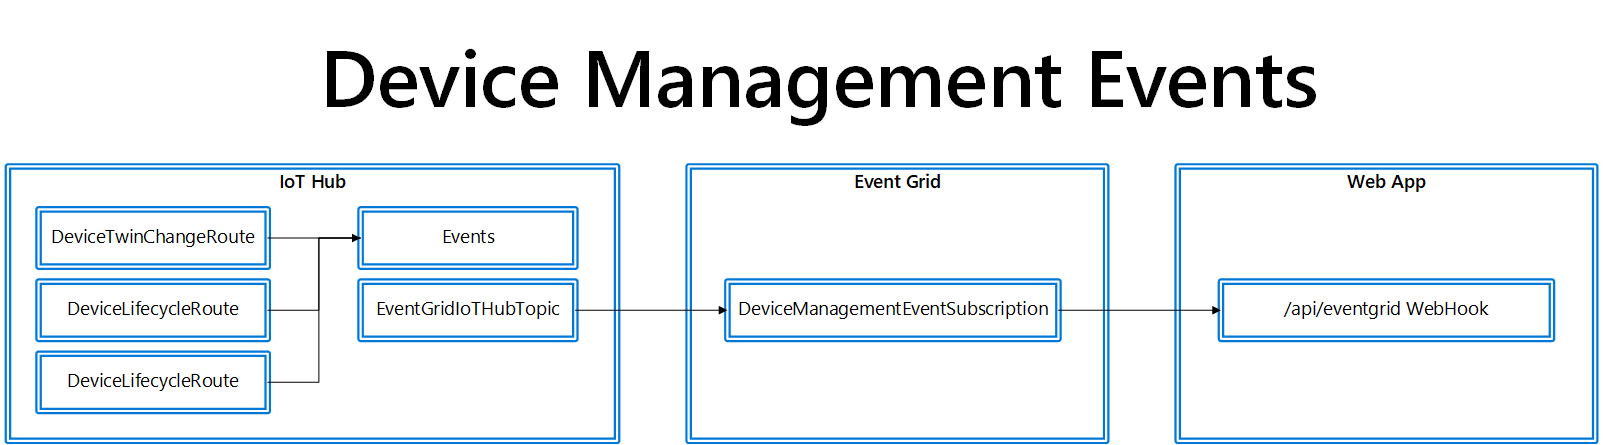 Device Management Event Flow